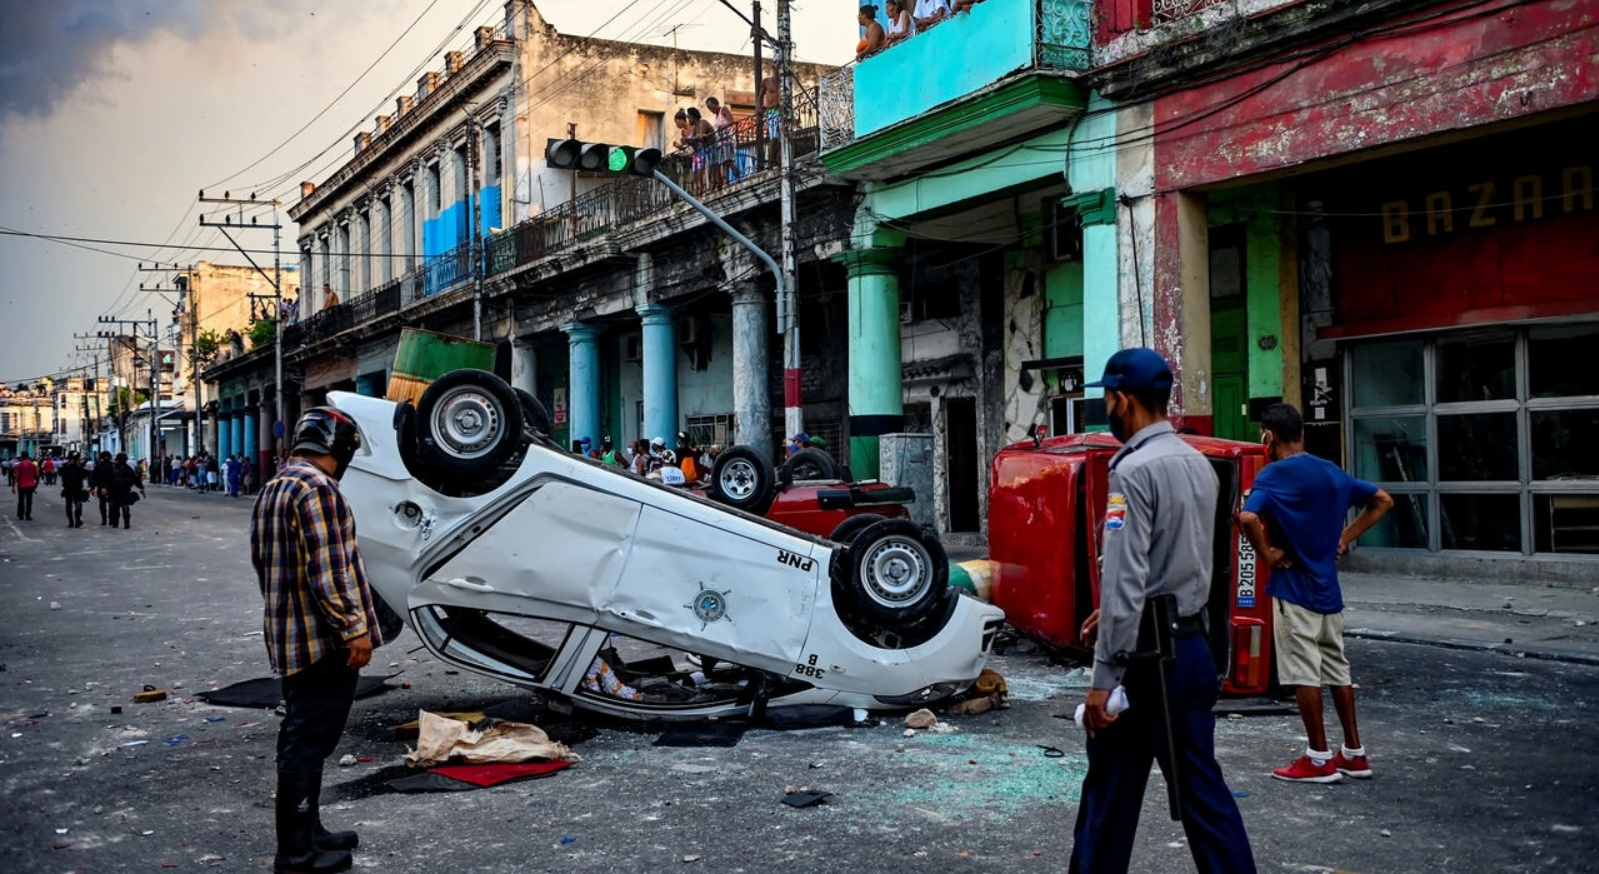 سيارات تابعة للشرطة مقلوبة جرّاء تظاهرة في هافانا ضدّ الرئيس الكوبي في 11 يوليو 2021